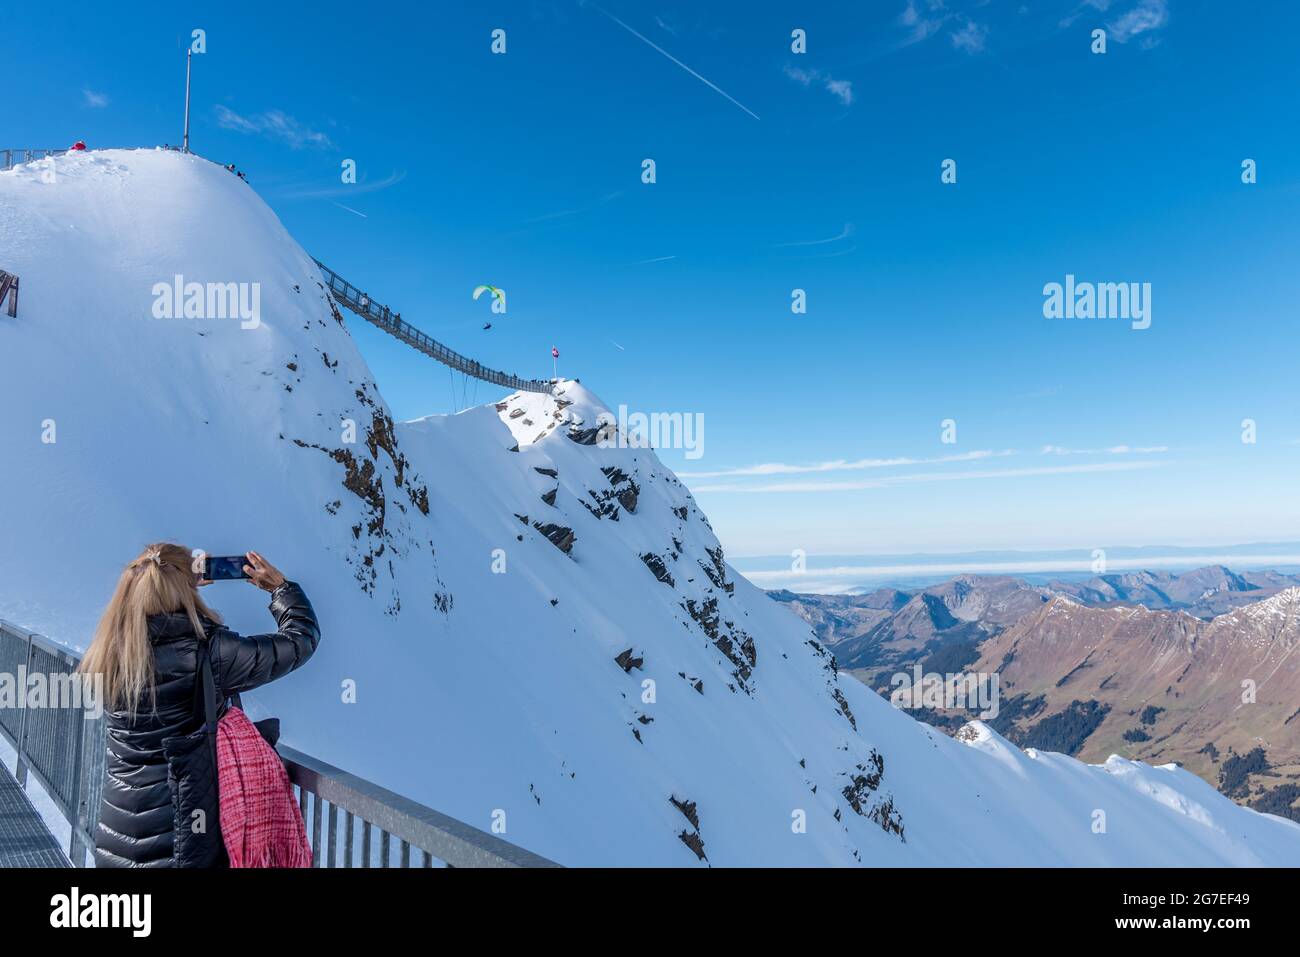 Unbekannte Frau, die mit ihrem Mobiltelefon Fotos von einer Person macht, die im Berg Gleitschirmfliegen macht. Stockfoto